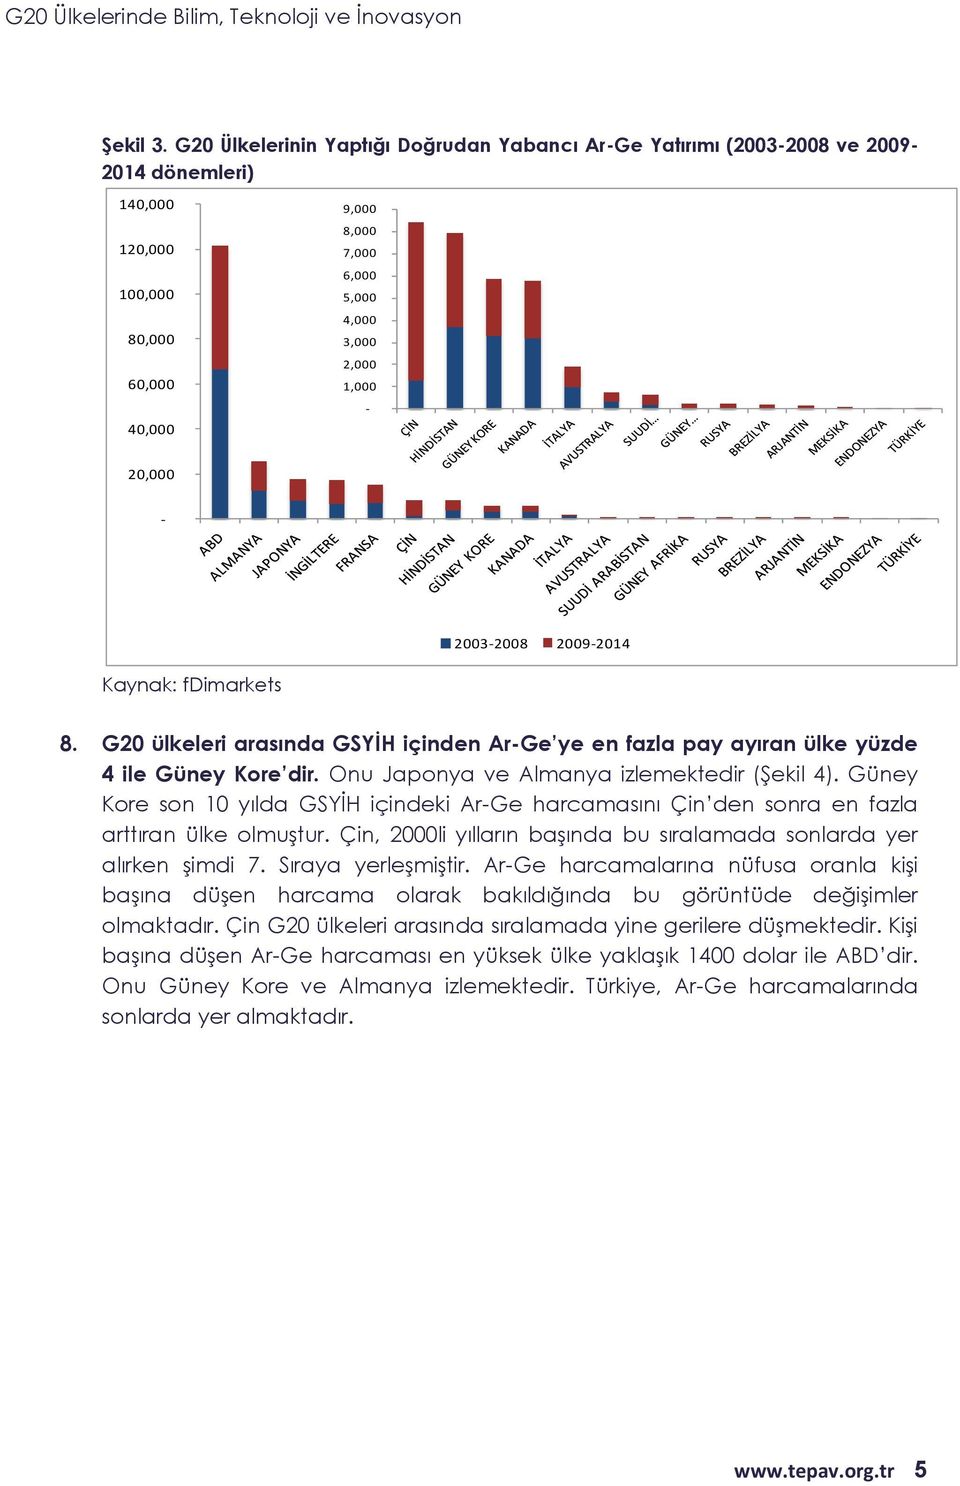 G2 ülkeleri arasında GSYİH içinden Ar-Ge ye en fazla pay ayıran ülke yüzde 4 ile Güney Kore dir. Onu Japonya ve Almanya izlemektedir (Şekil 4).